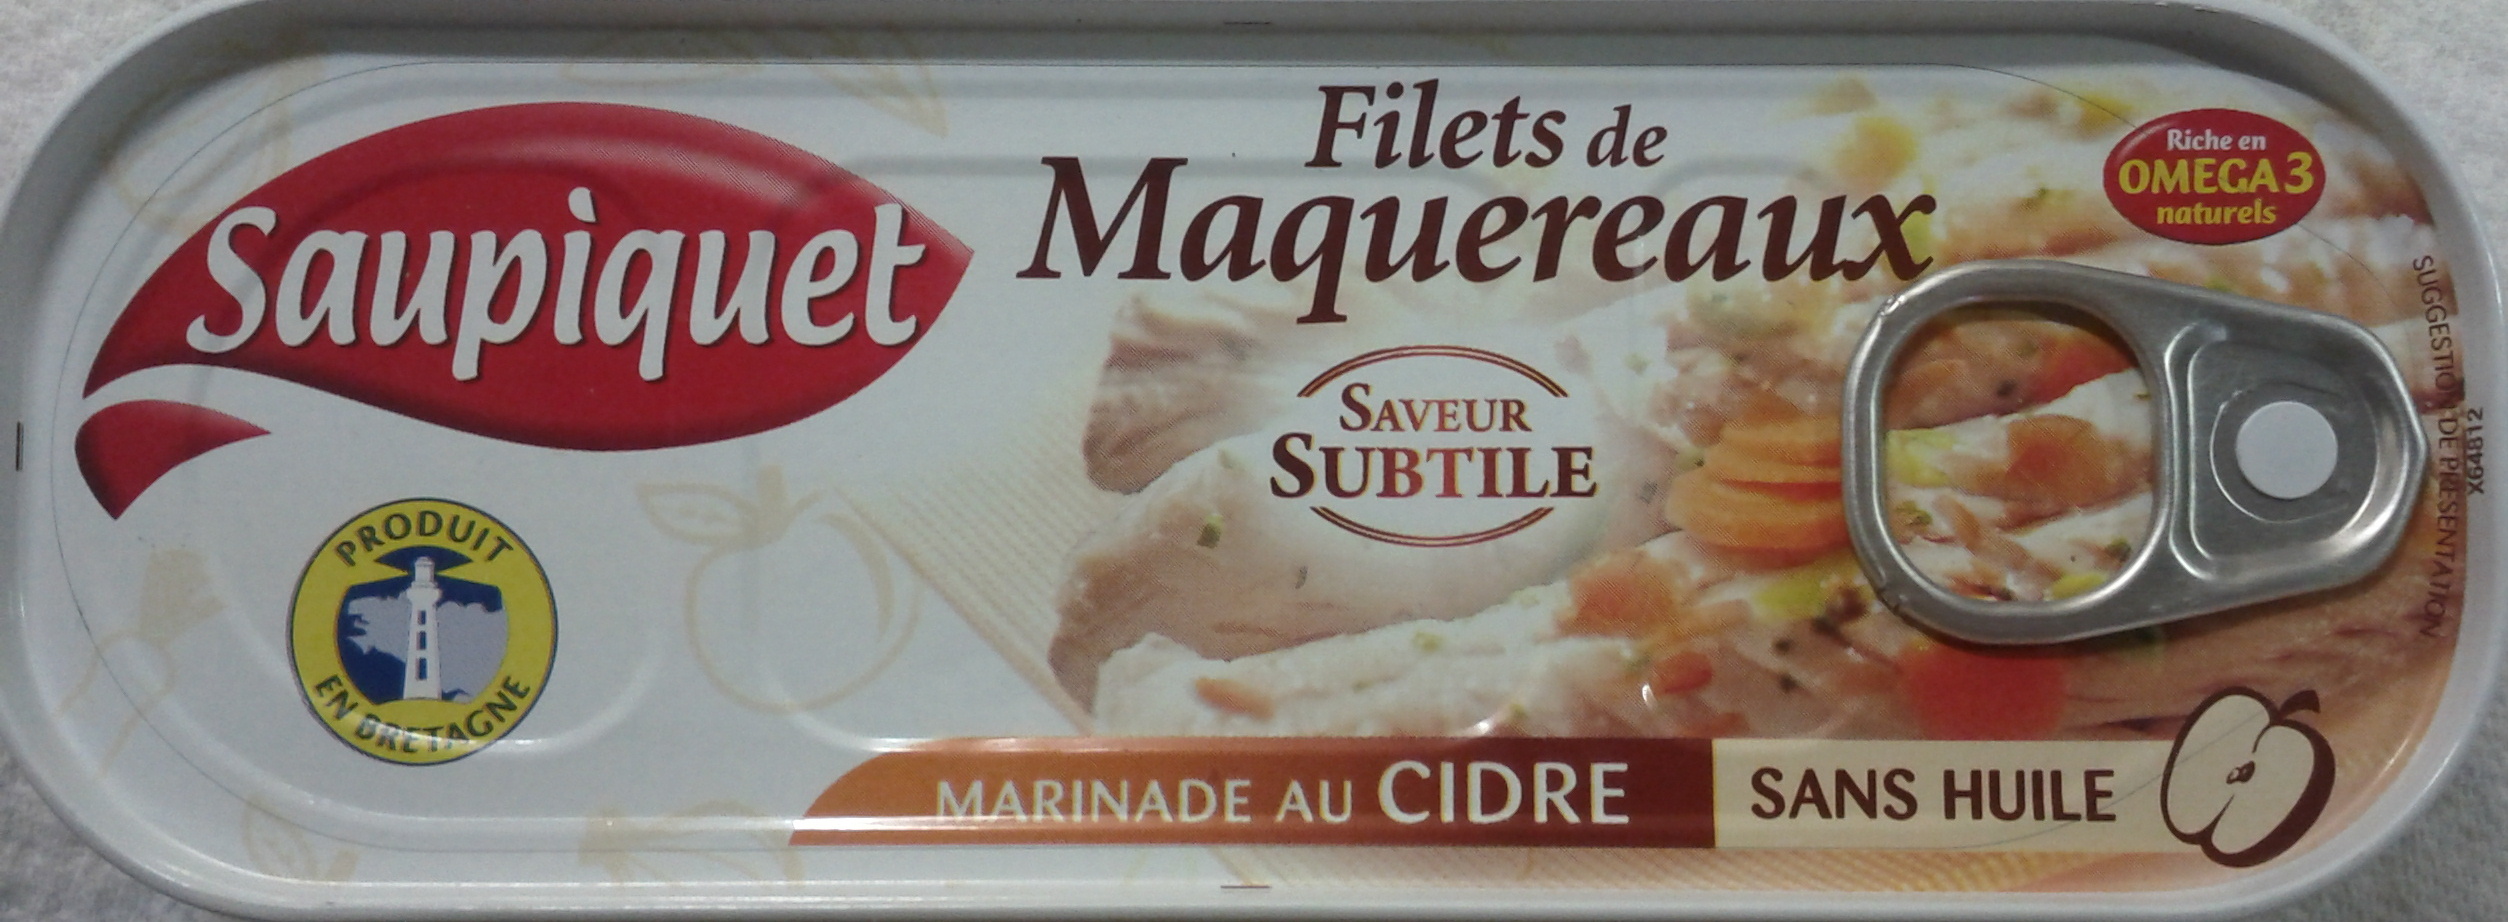 Filets de Maquereaux (Marinade au Cidre) - Product - fr